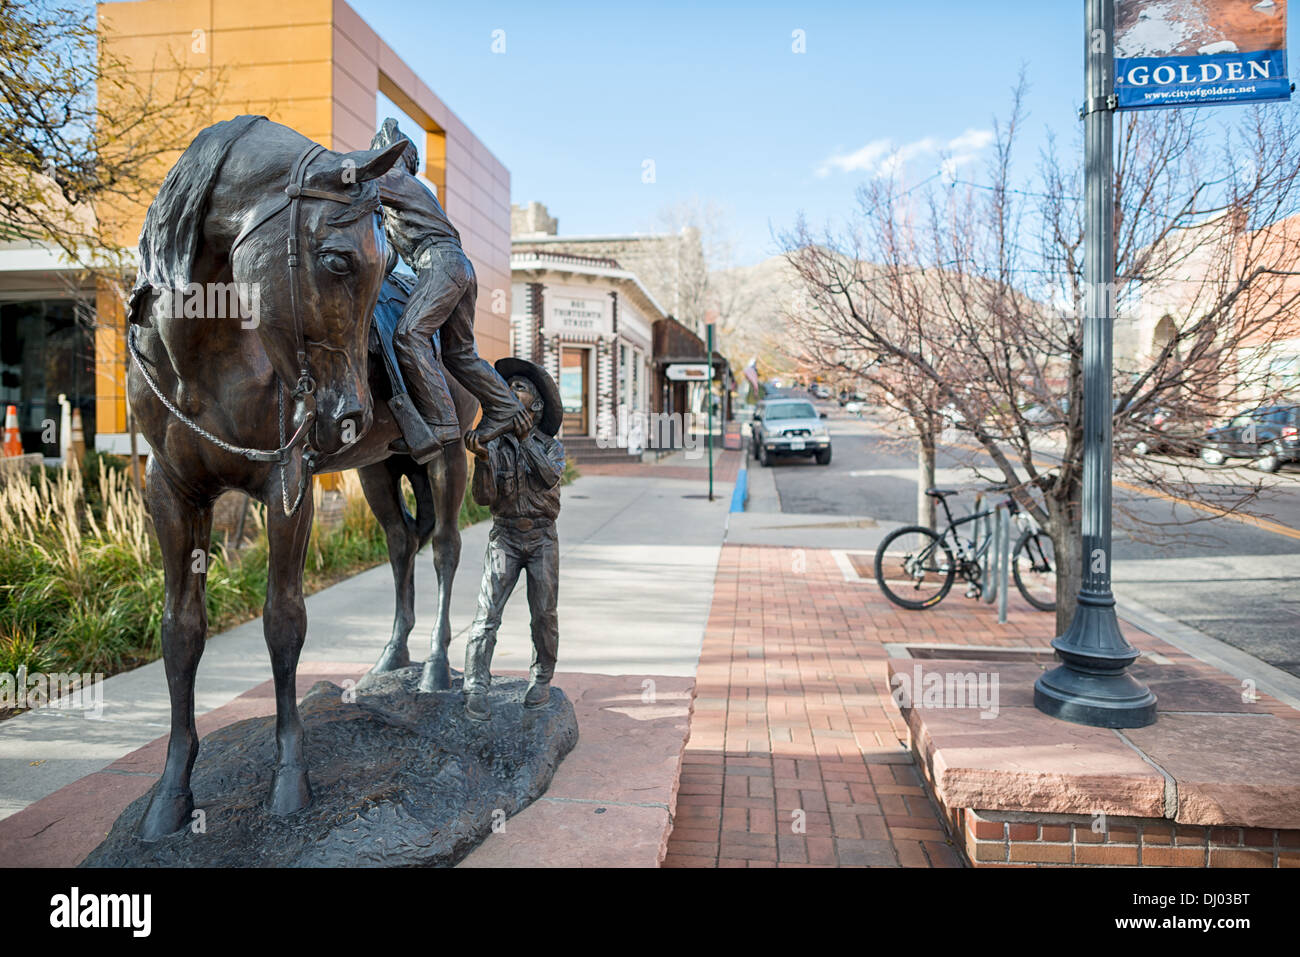 GOLDEN, Colorado – die Statue eines kleinen Jungen, der einem kleinen Mädchen beim Pferderennen in Golden, Colorado, am östlichen Rand der Rocky Mountains in Denver hilft. Das Golden Today wurde während des Pike's Peak Gold Rush gegründet und ist bekannt für sein reiches Erbe, Outdoor-Aktivitäten und den Geburtsort der Coors Brewery, die eine einzigartige Mischung aus Geschichte, Kultur und natürlicher Schönheit verkörpert. Stockfoto